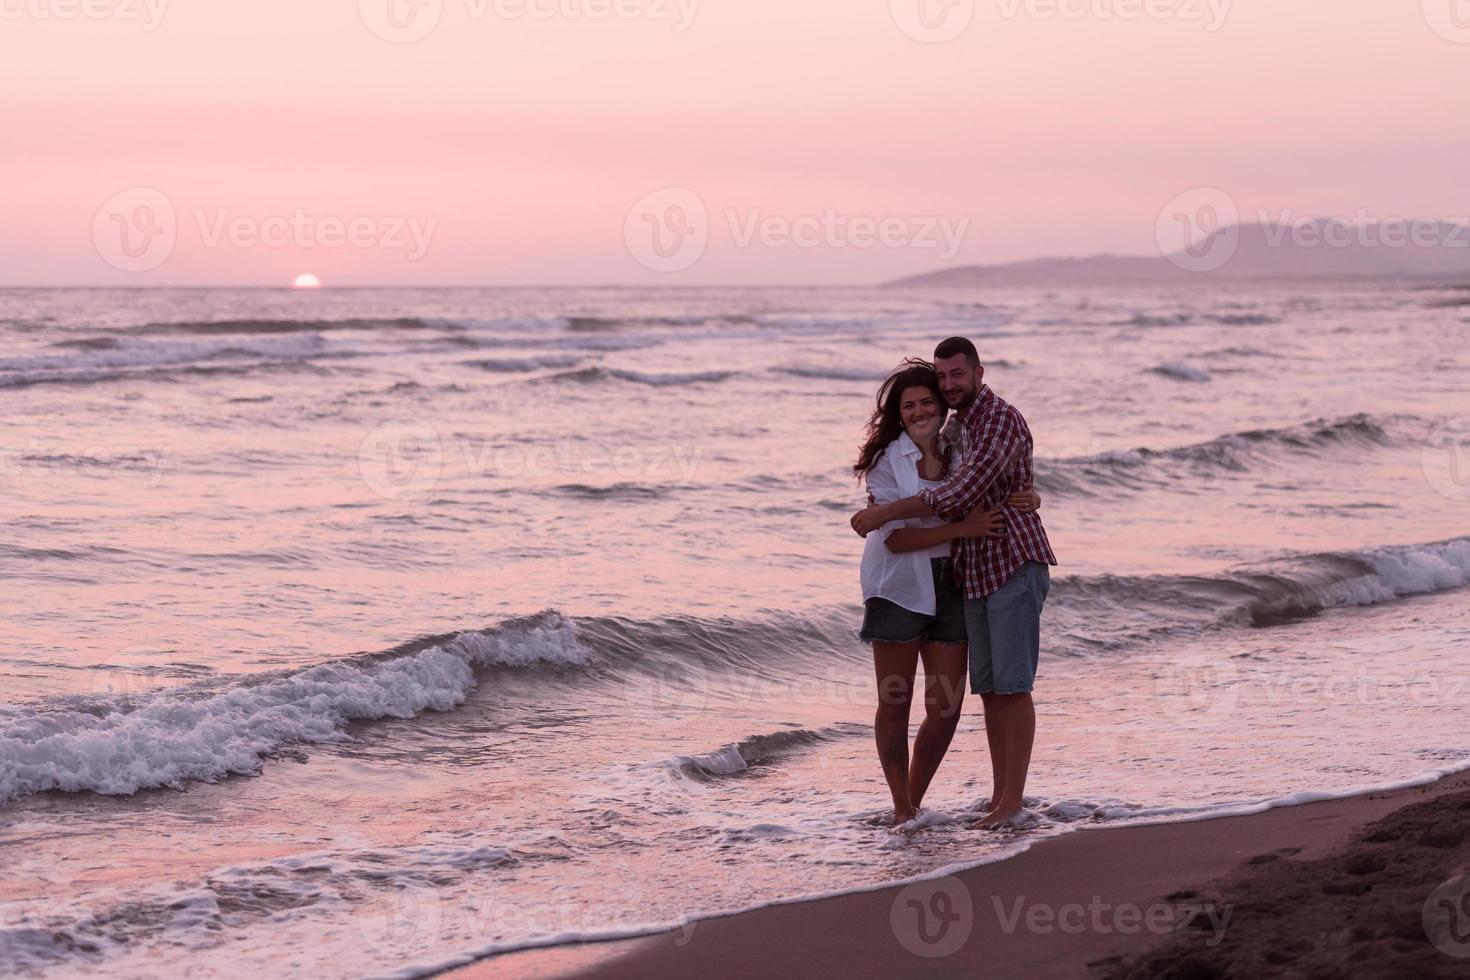 heureux couple romantique d'âge moyen profitant d'une belle promenade au coucher du soleil sur la plage. concept de mode de vie de retraite de vacances de voyage photo